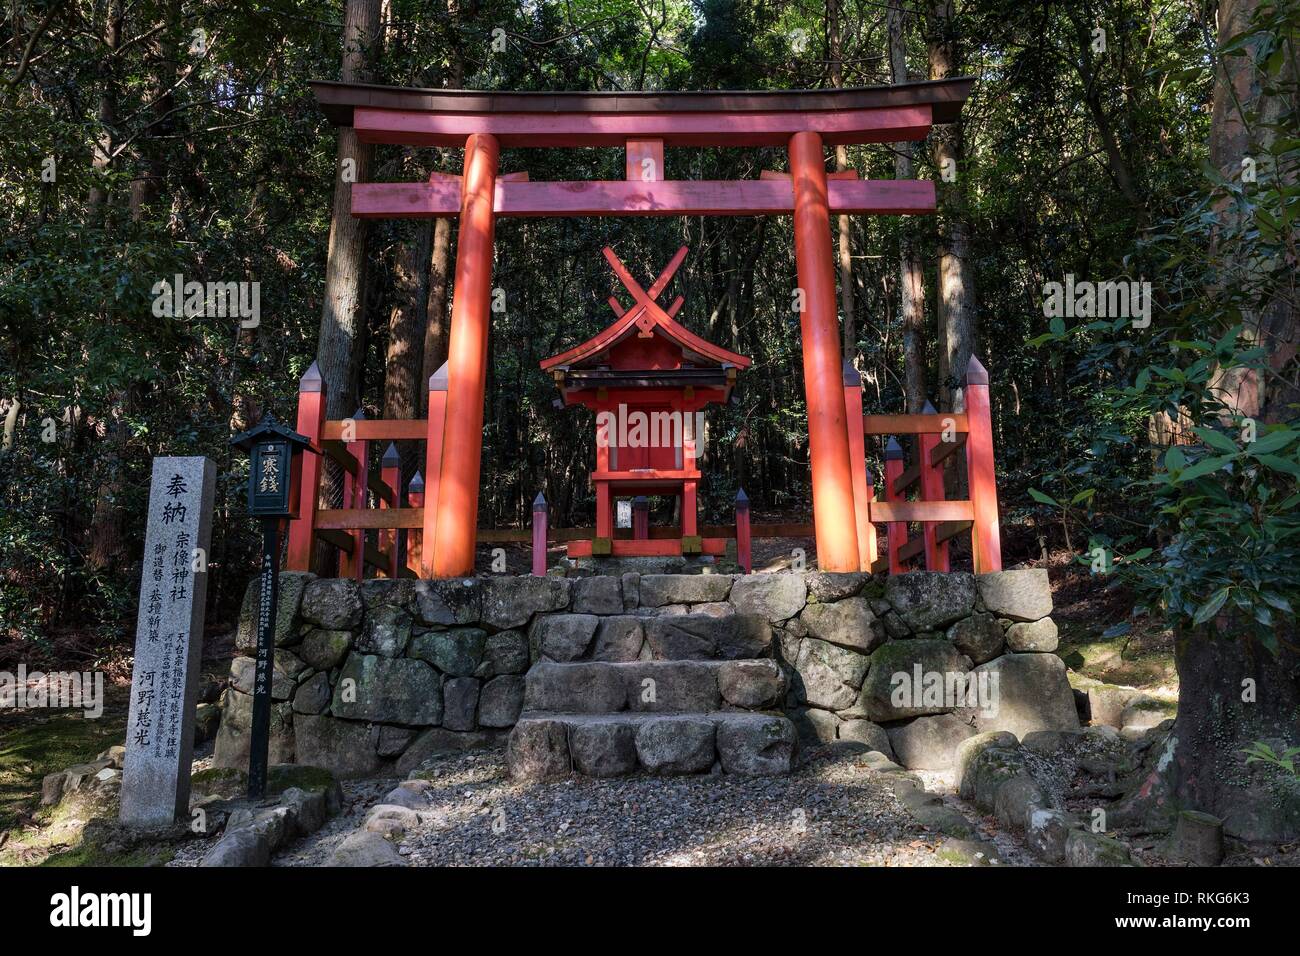 Nara - Japón, puerta torii y santuario sintoísta en el bosque primitivo Kasugayama, registrada como Patrimonio de la Humanidad de la UNESCO como parte de la histórica Foto de stock